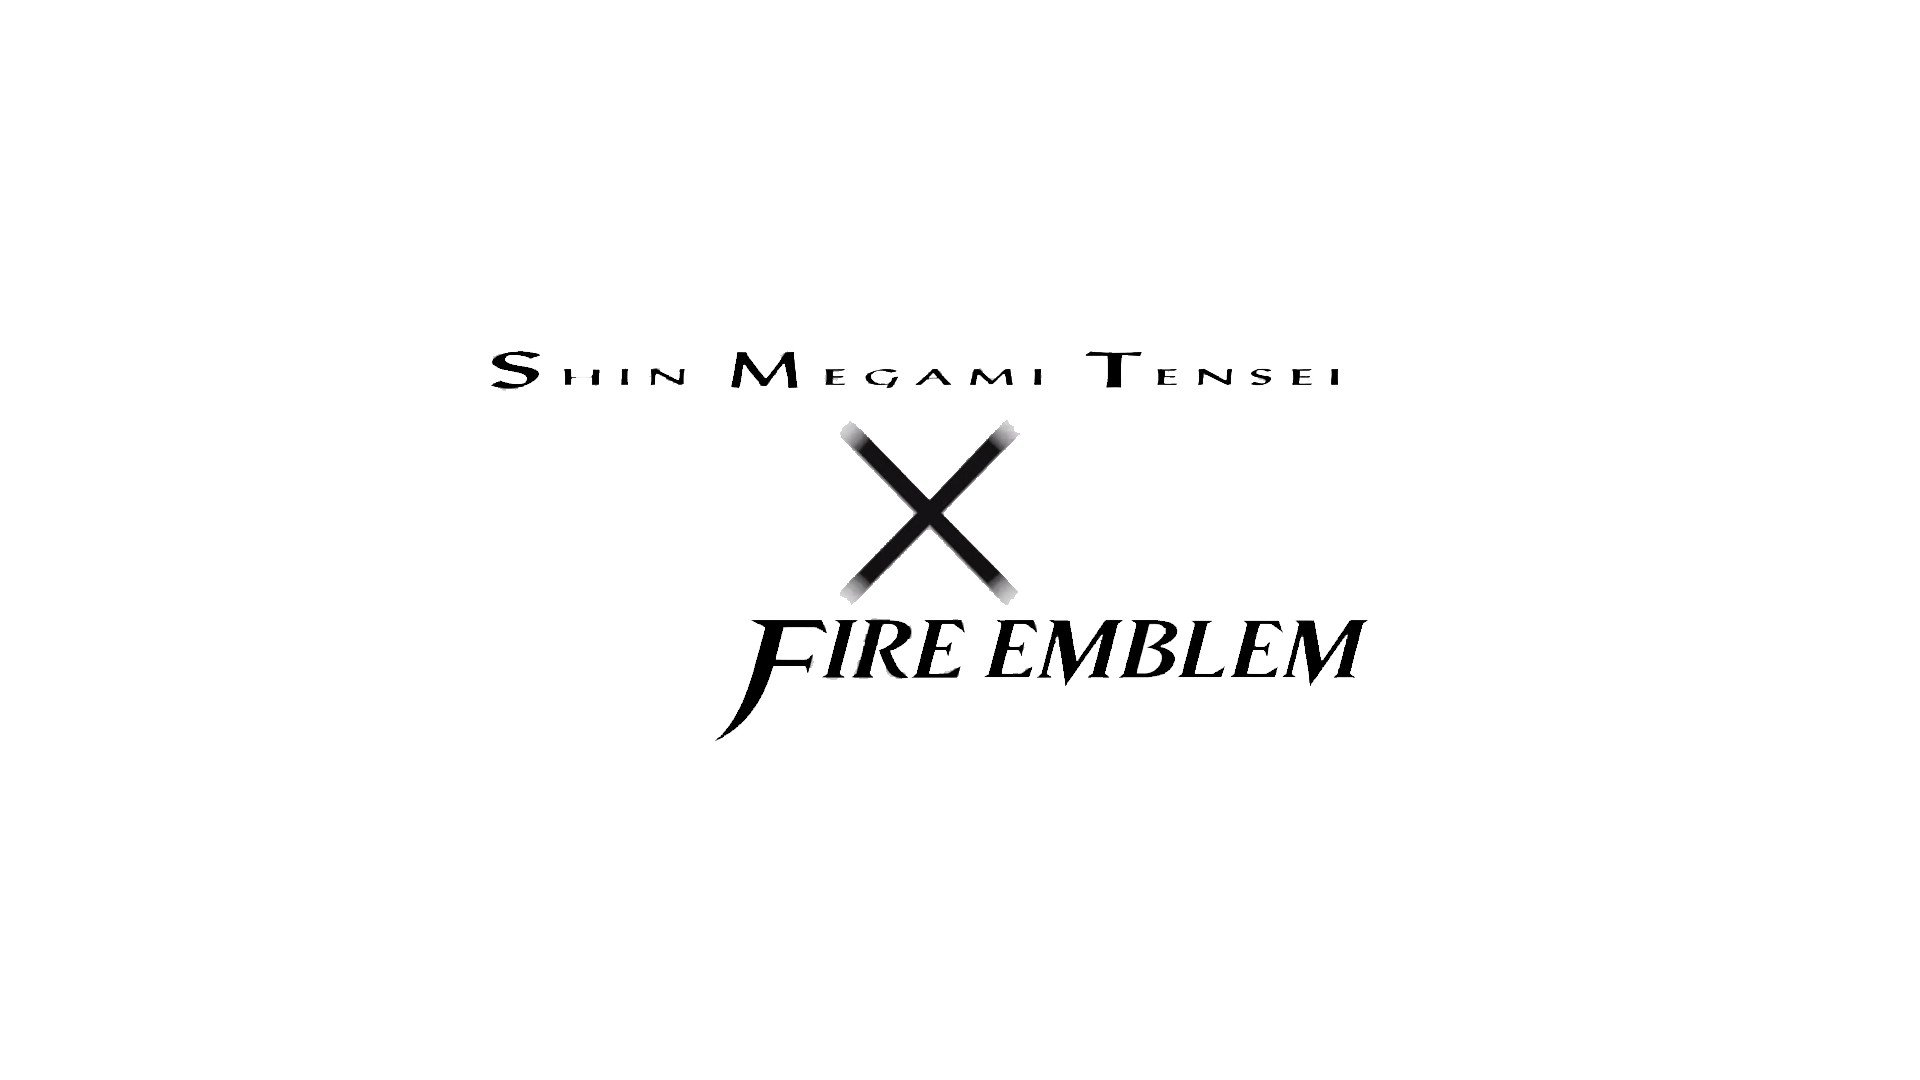 Persona series, Atlus, Nintendo, Fire Emblem Wallpaper